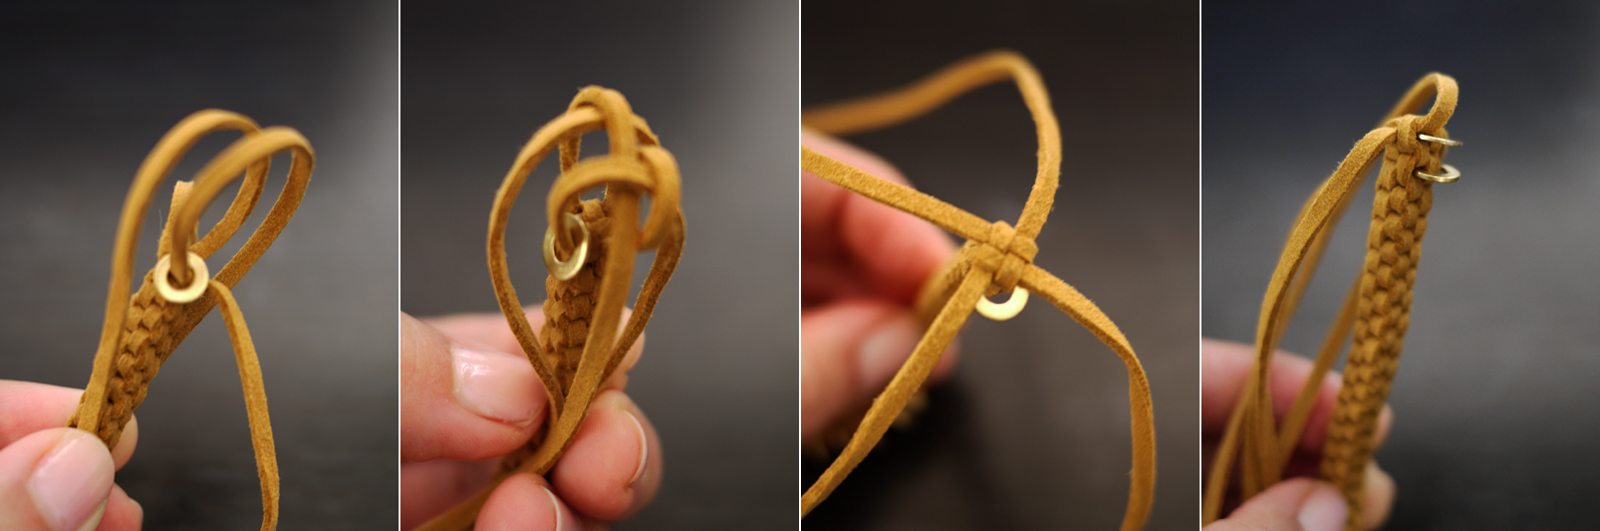 DIY Bracelet - Scooby doo knot 